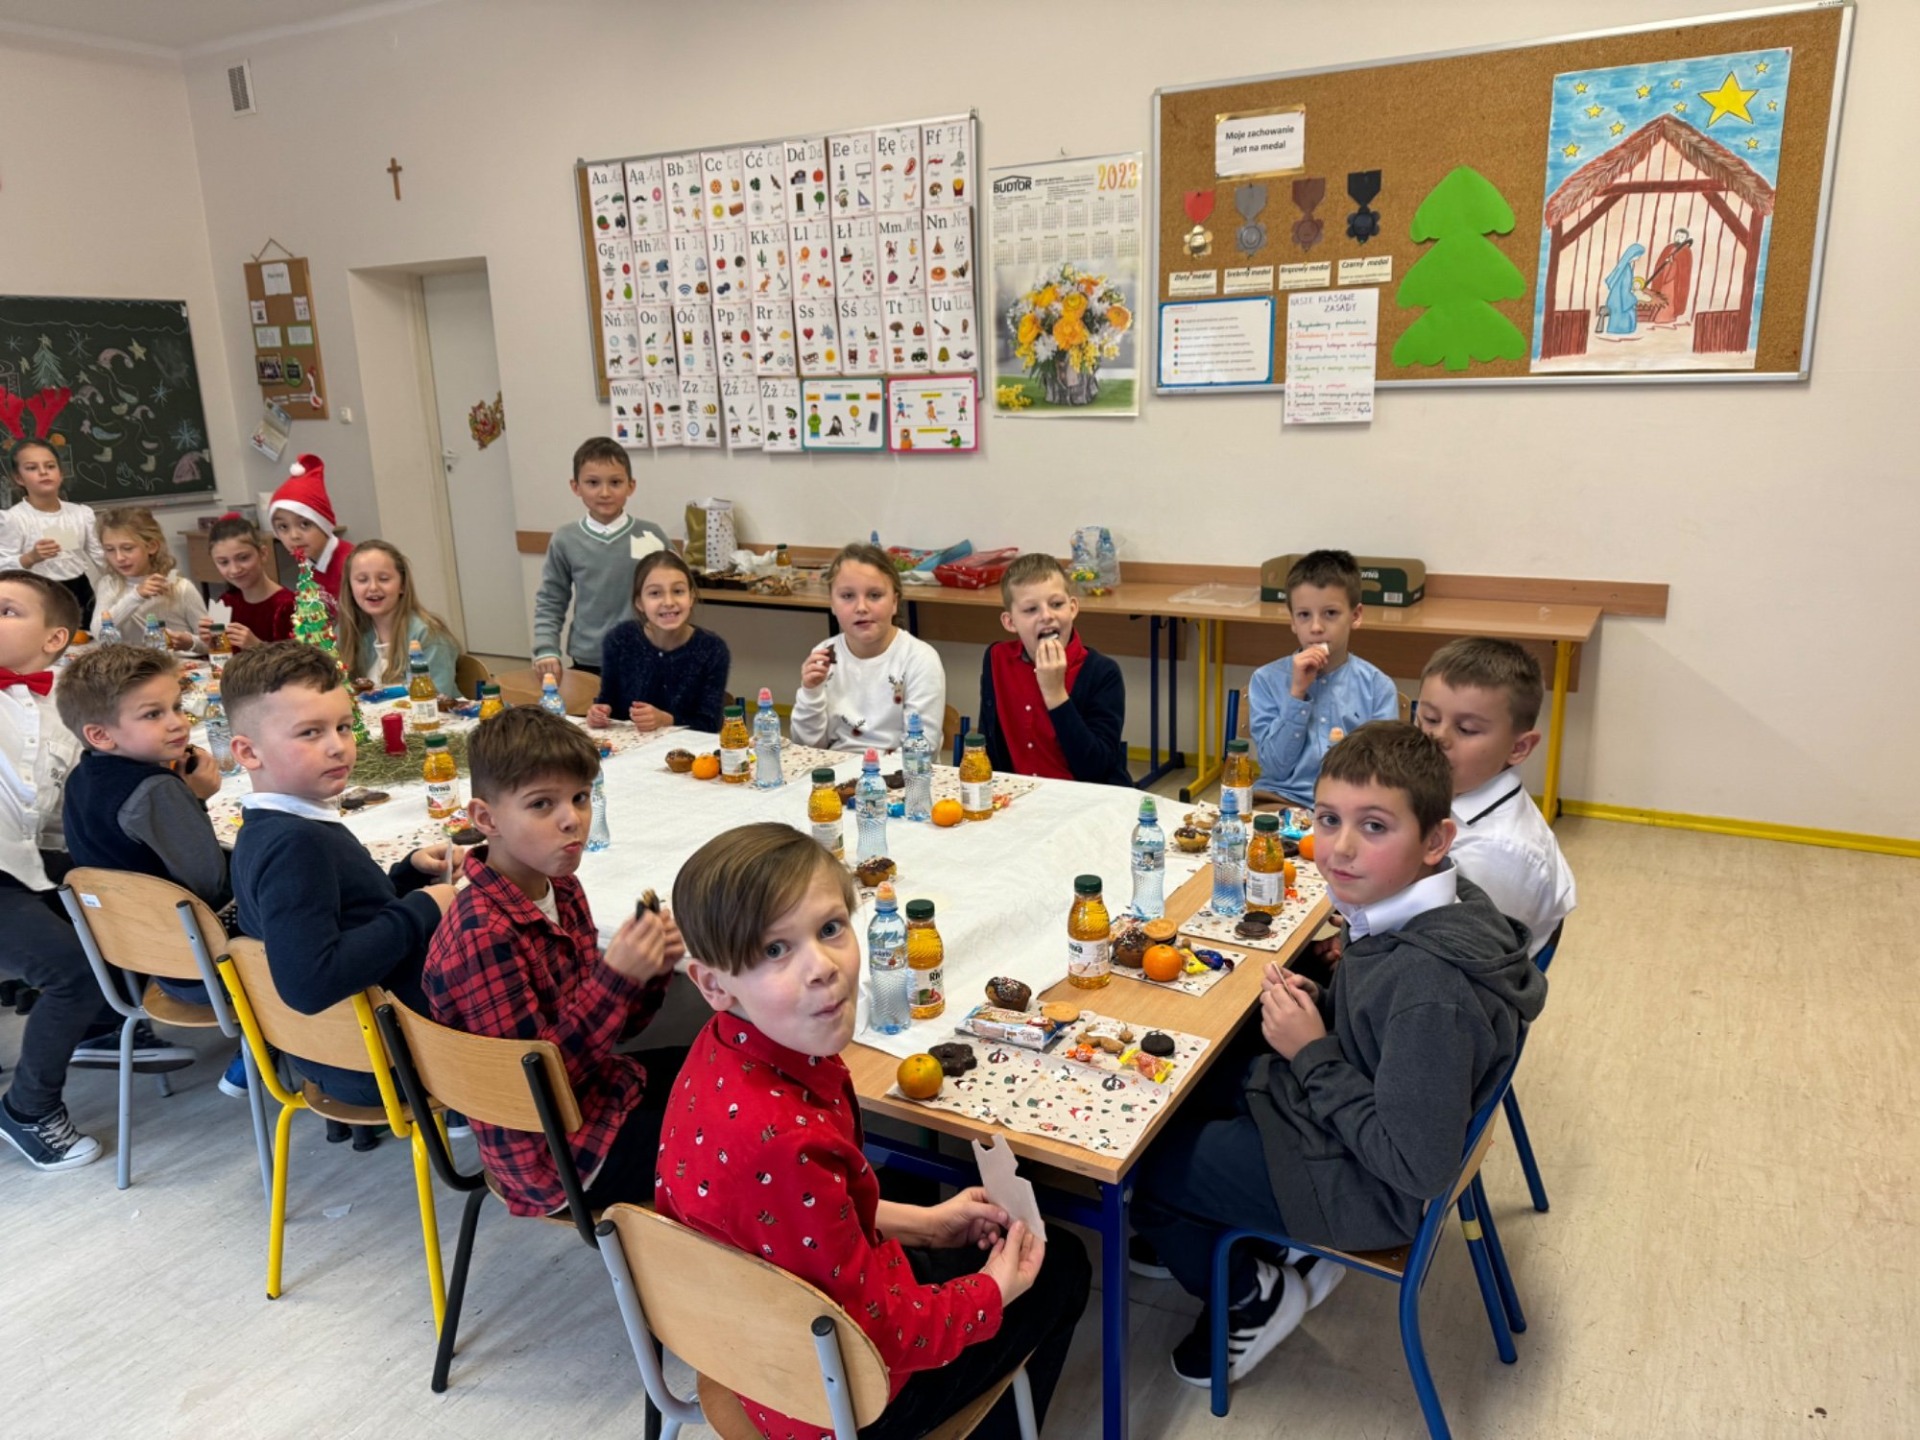 Dzieci siedzą przy stole, na stole biały obrus, ciasteczka, owoce.